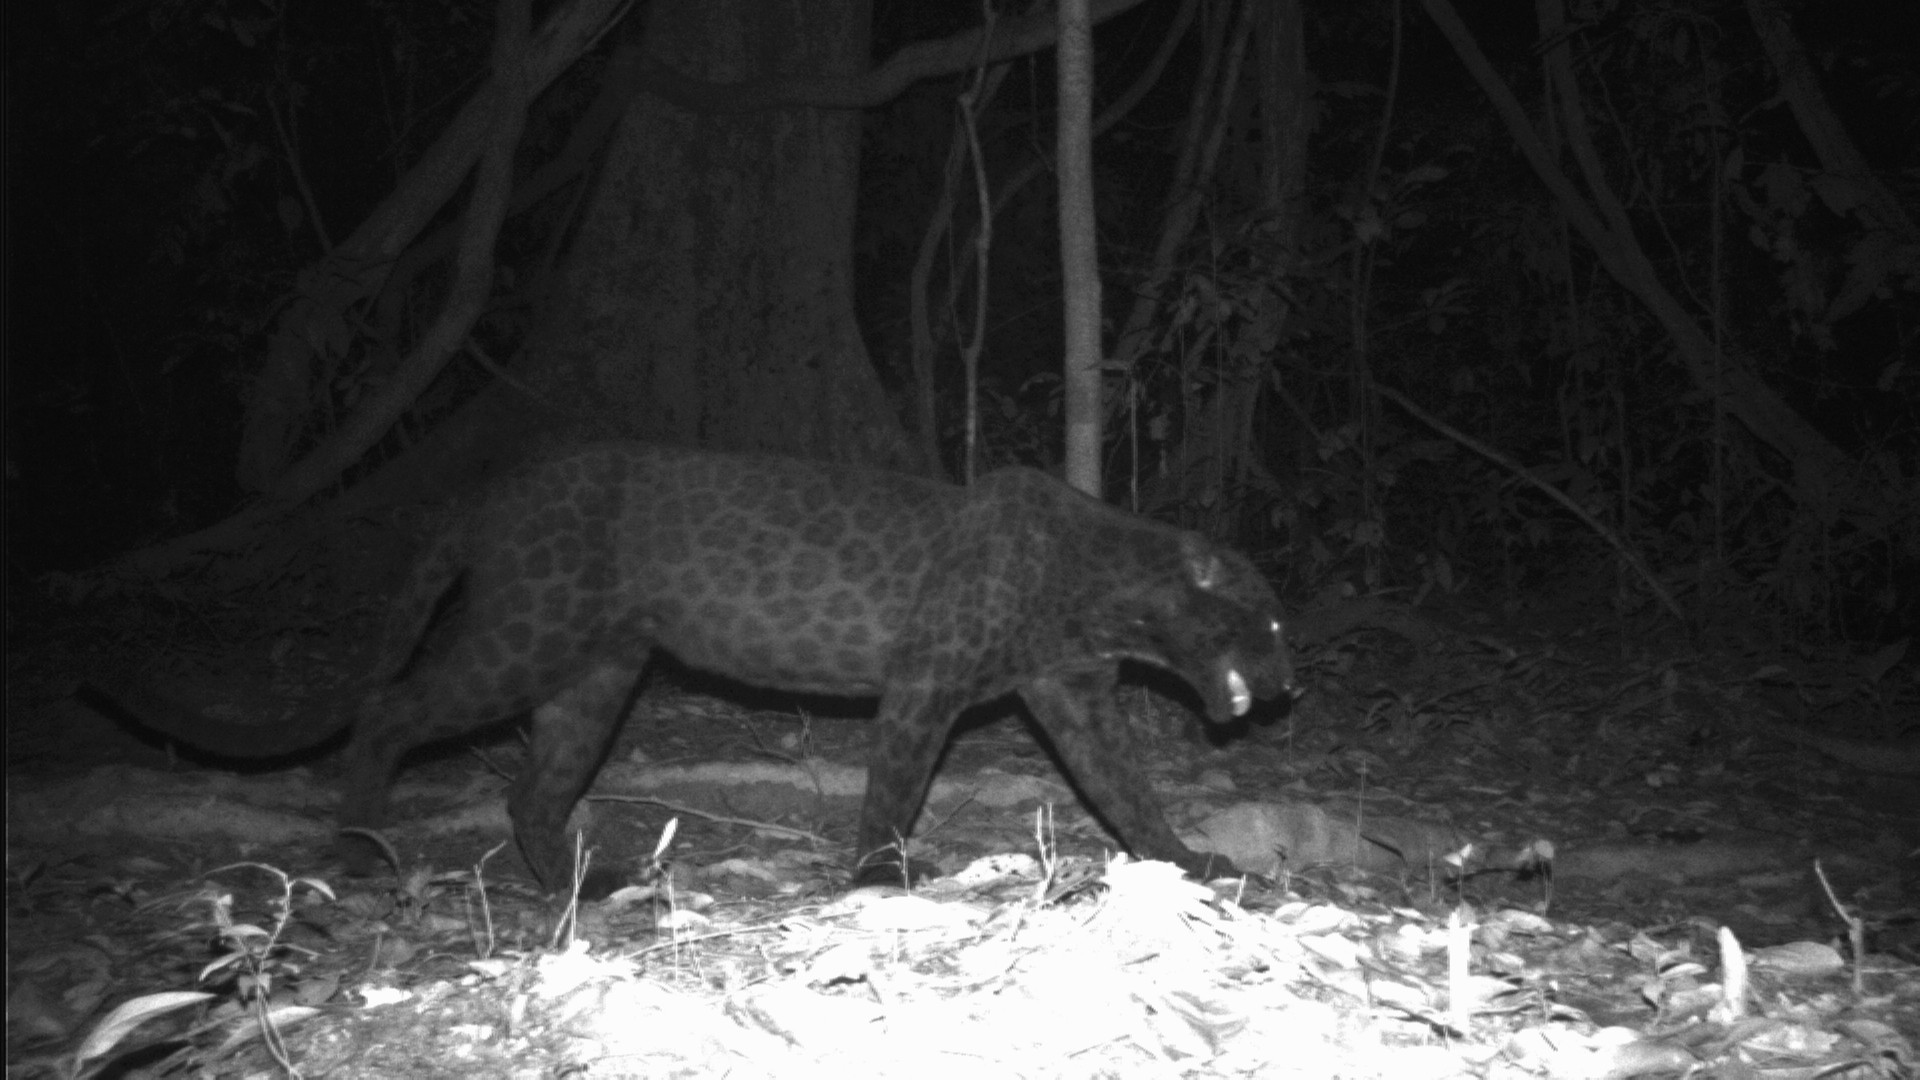 A black leopard in Malaysia